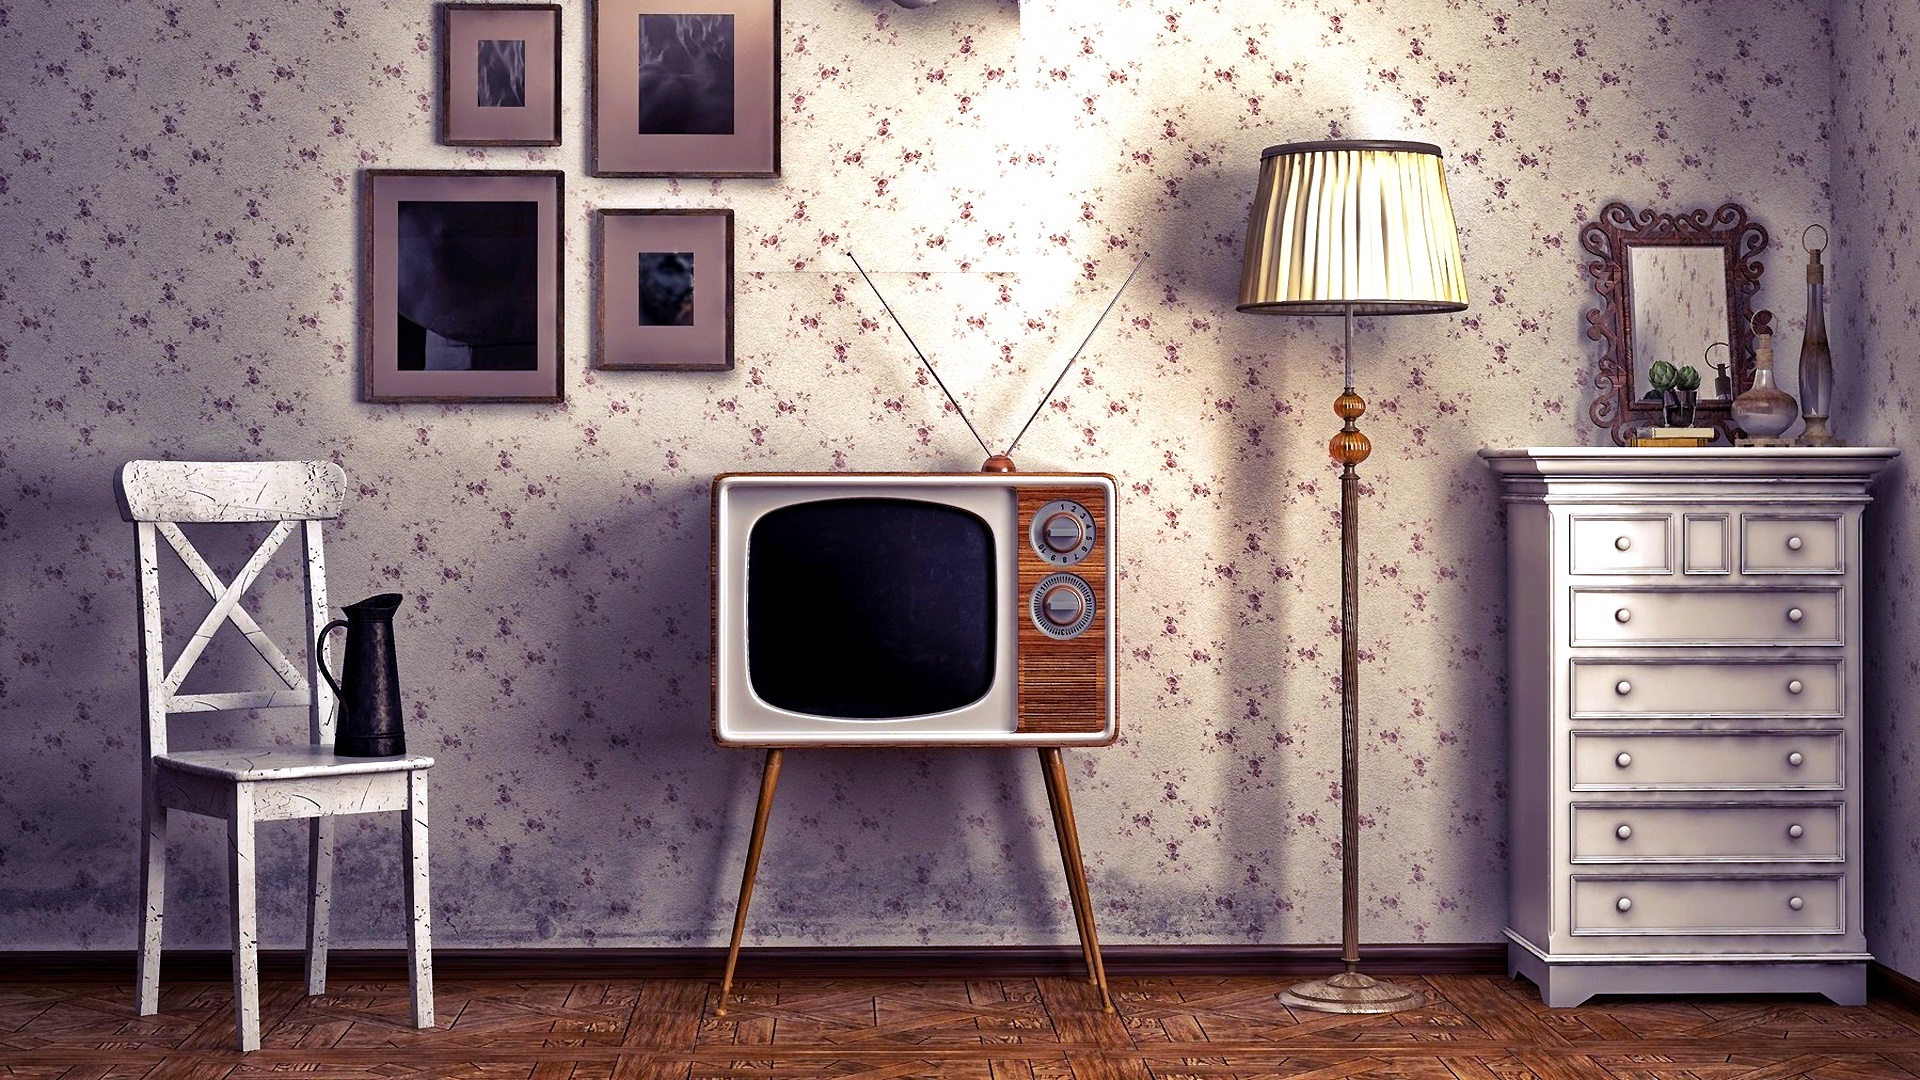 Retro Television Vintage 1920x1080